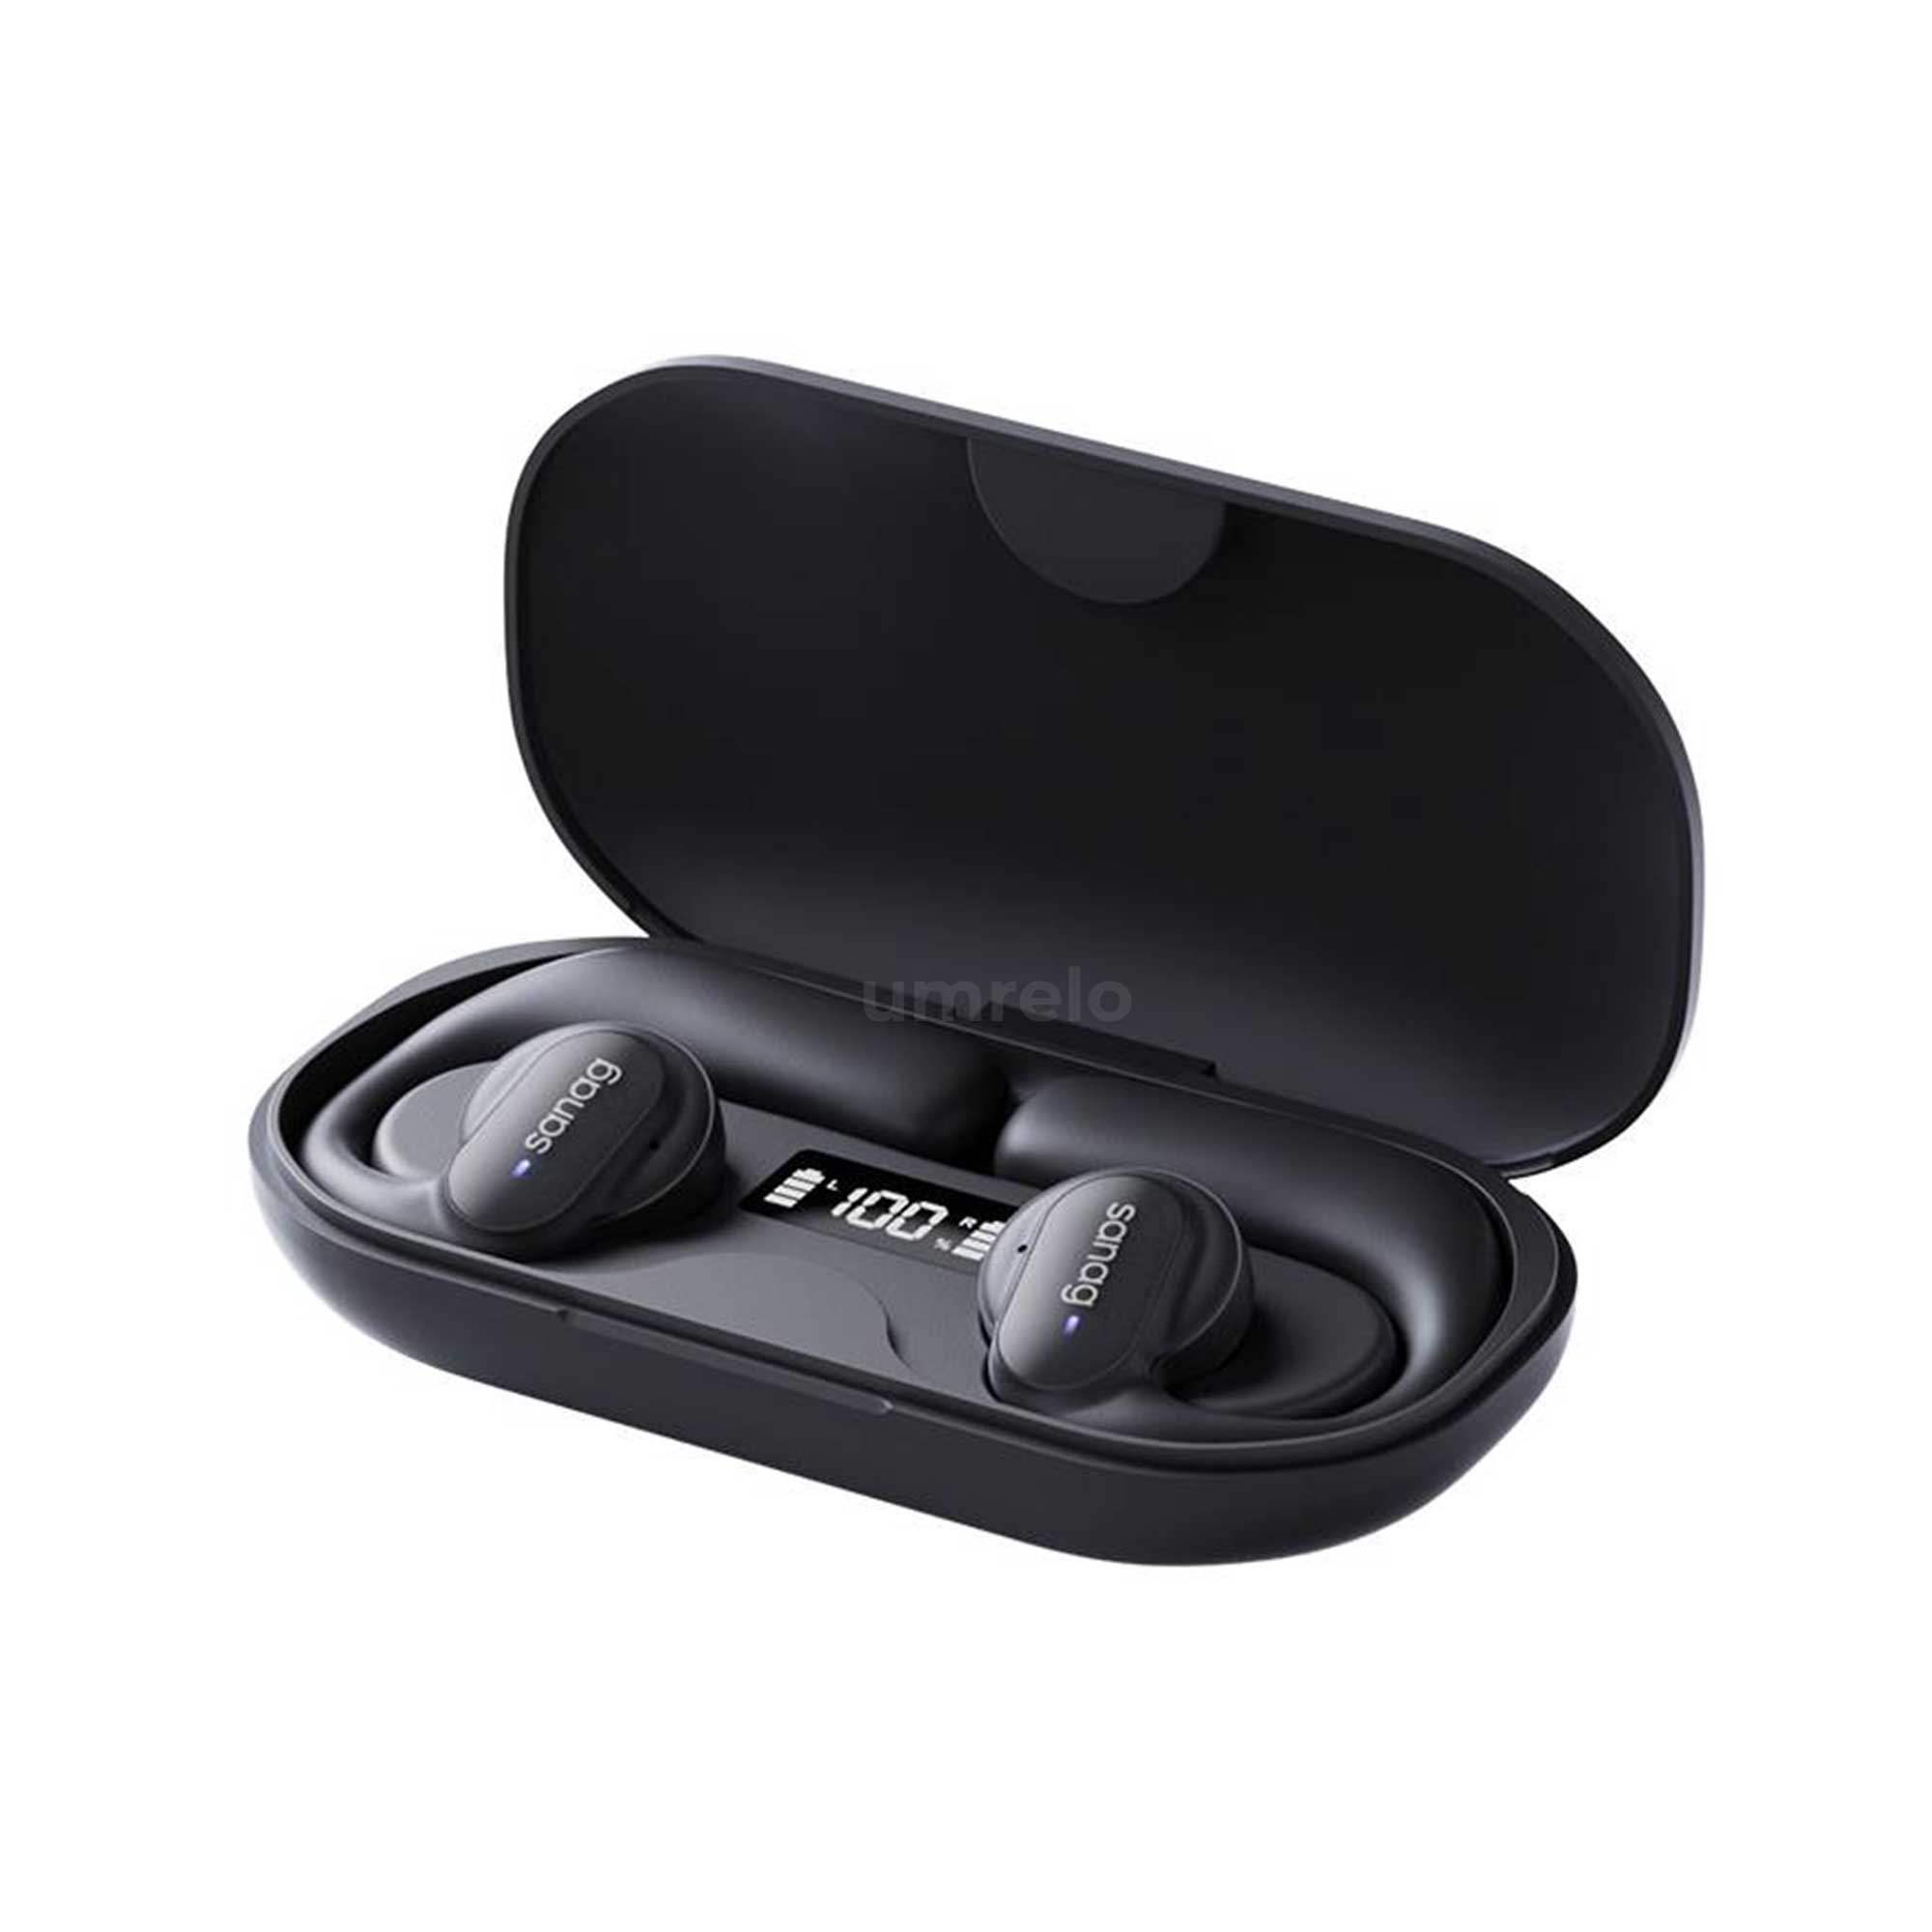 Sanag Z30S PRO Open-Ear Air Conduction True Wireless Earbuds